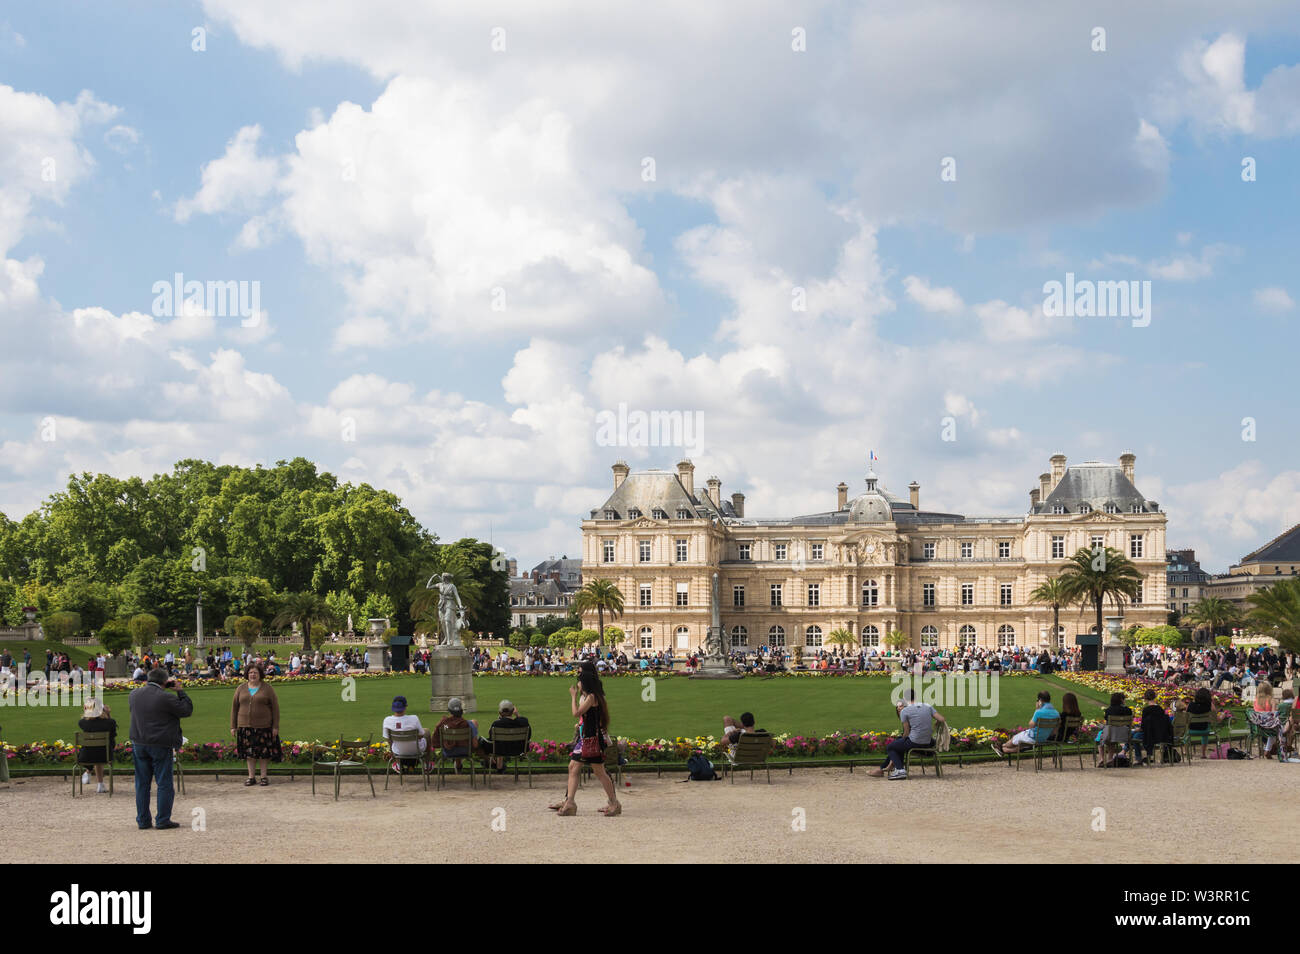 Paris - 13. Juli 2014: horizontale Ansicht von Luxemburg Gardens und Palace überfüllt mit Touristen an einem bewölkten Sommertag Stockfoto